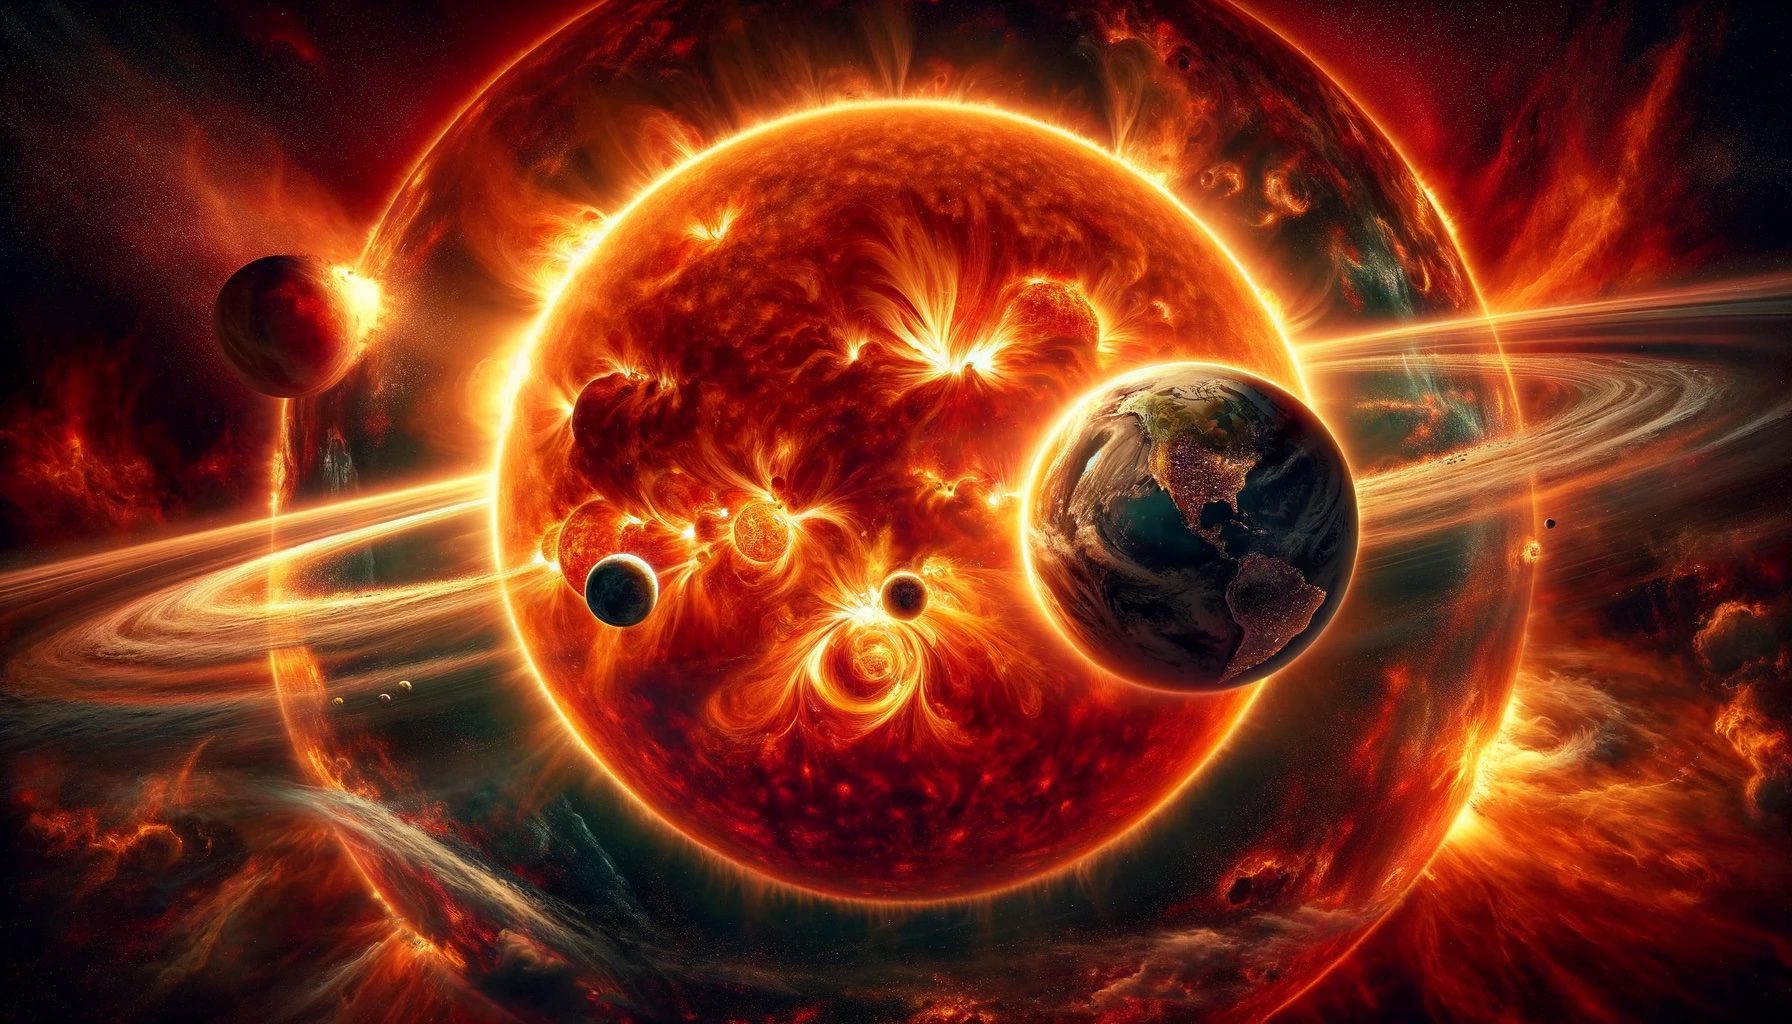 Ilustración del apocalipsis causado por la expansión del Sol en su fase de gigante rojo, engullendo los planetas cercanos, según la predicción de la IA.